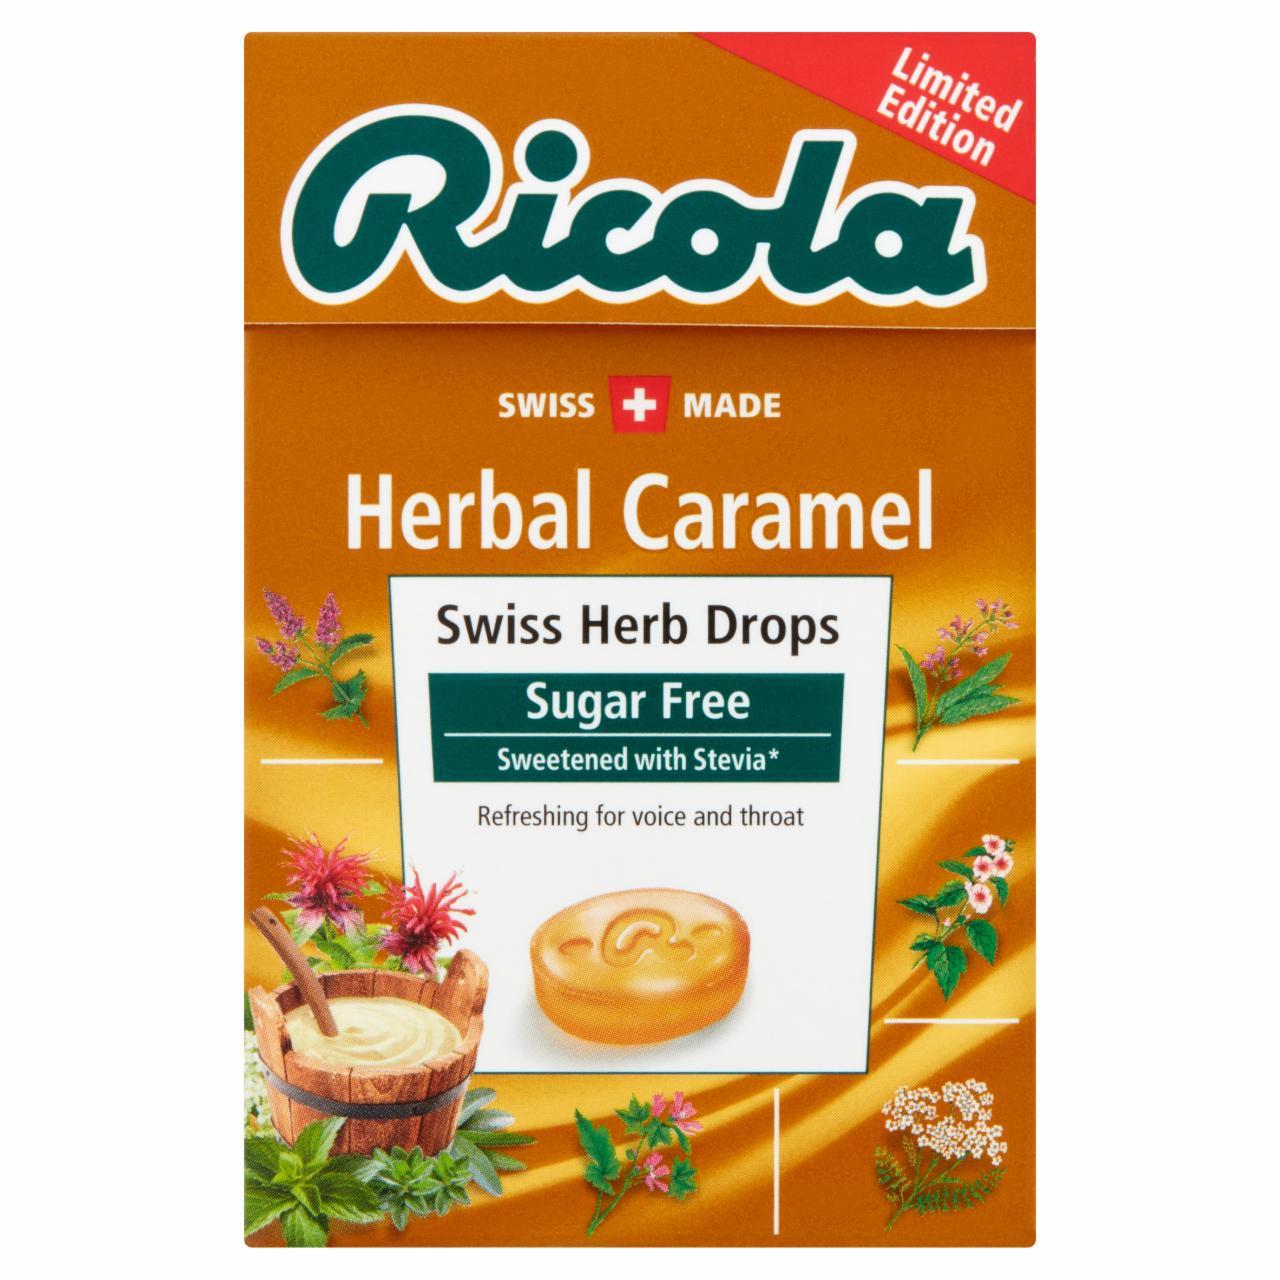 Képek - Ricola Herbal Caramel svájci cukormentes gyógynövény cukorkák, édesítőszerekkel 40 g